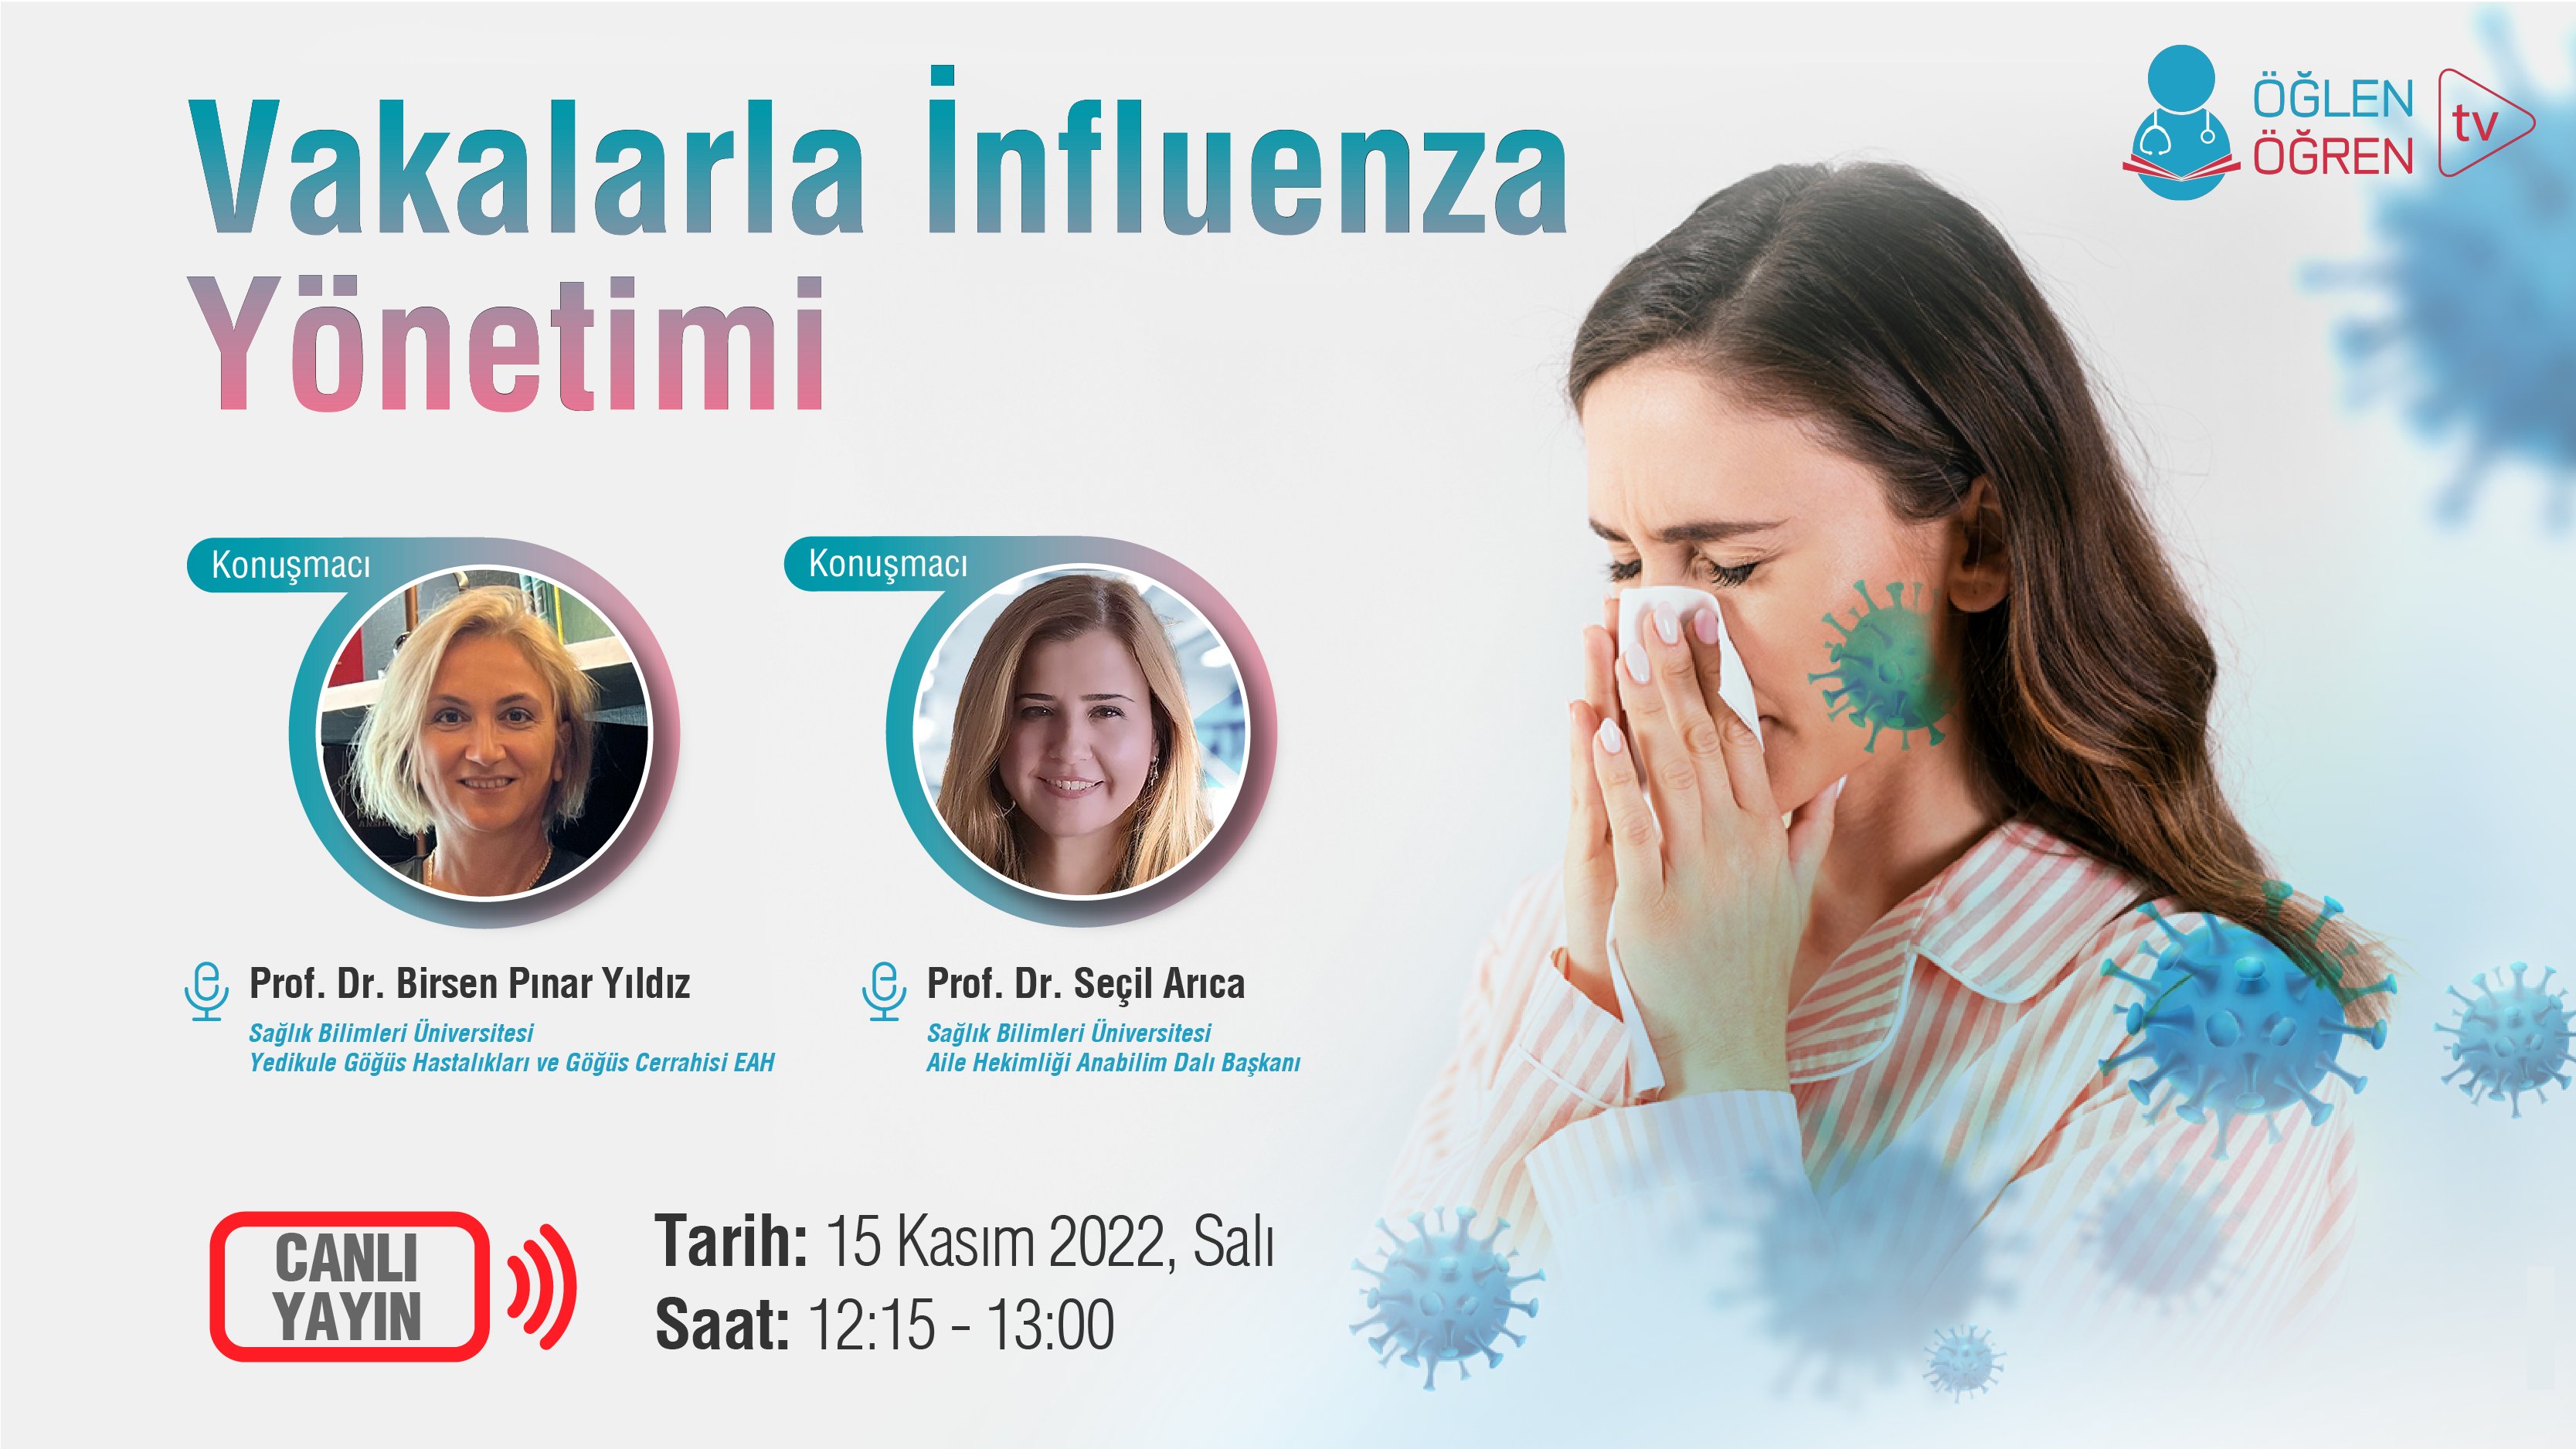 15.11.2022 tarihinde Vakalarla İnfluenza Yönetimi başlıklı programımız Öğlen Öğren TV ekranlarından canlı yayınlanacaktır